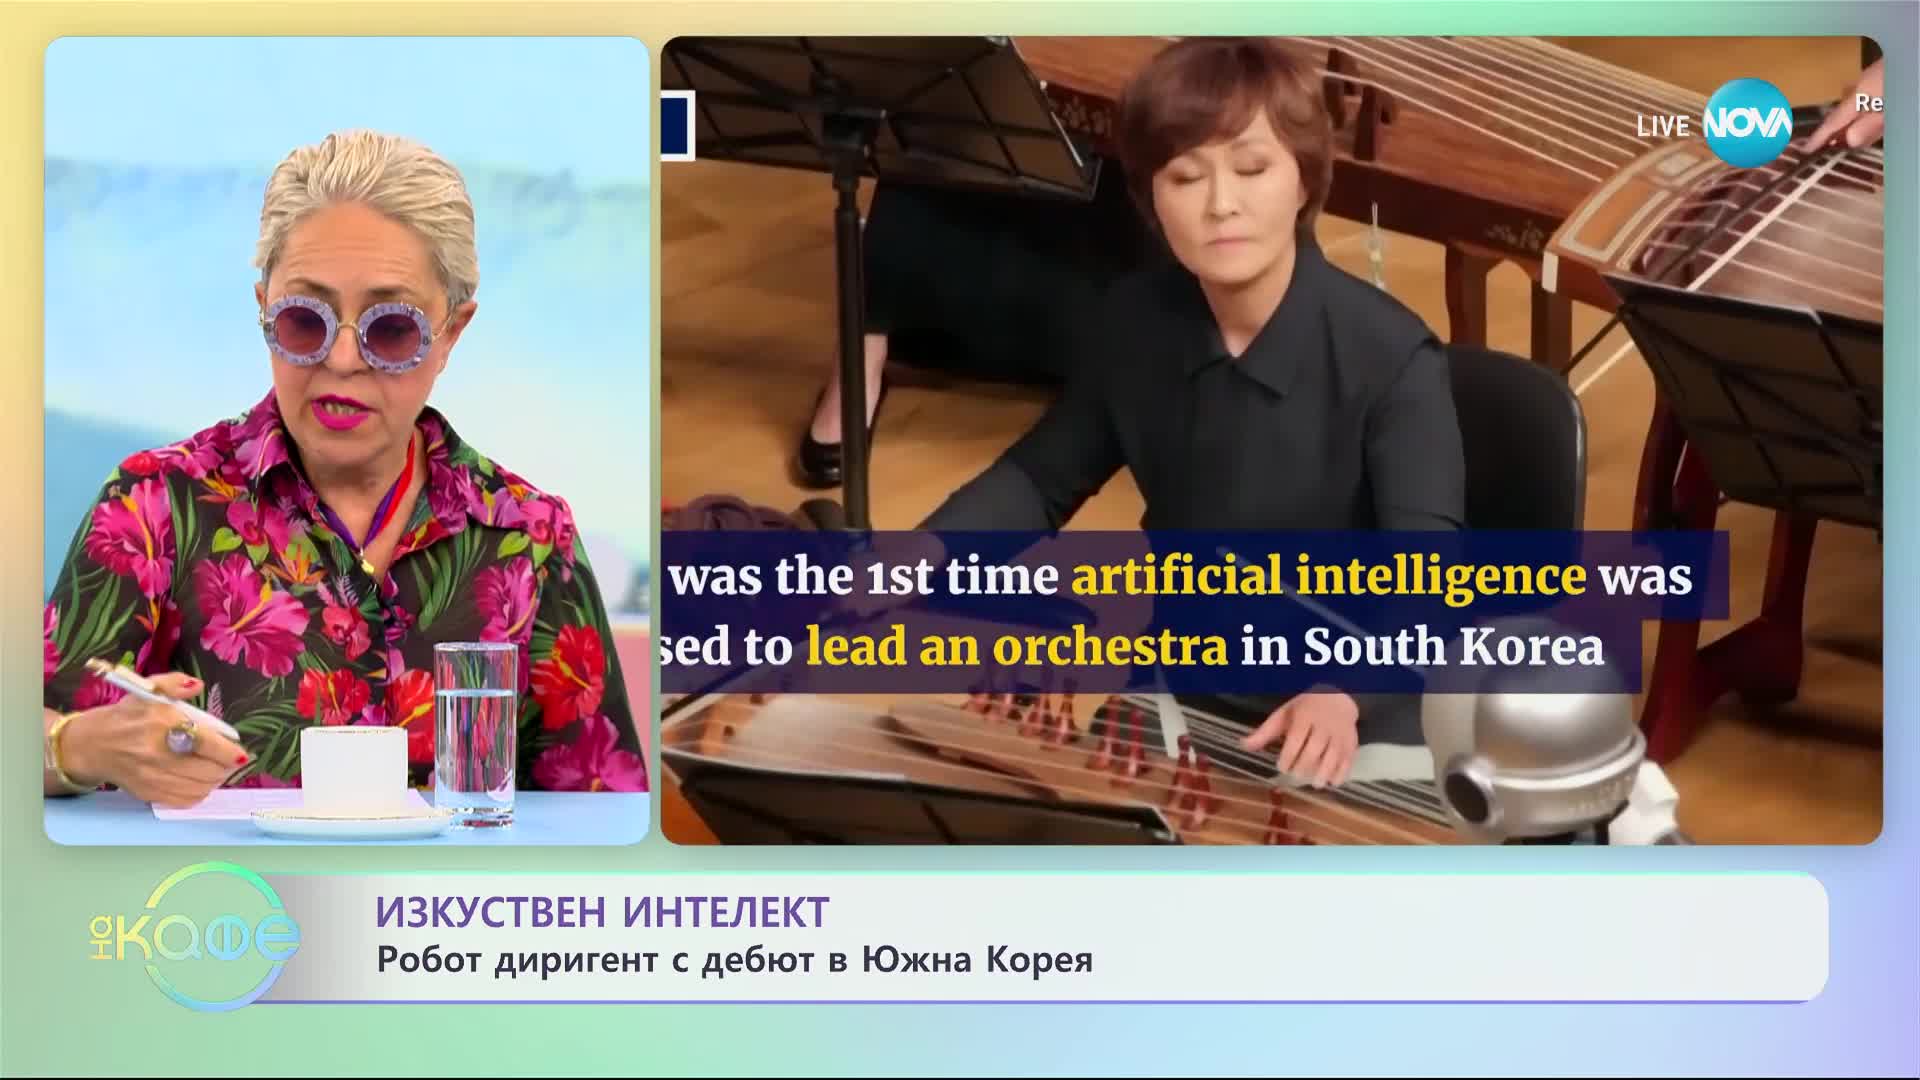 Робот диригент дебютира в Южна Корея